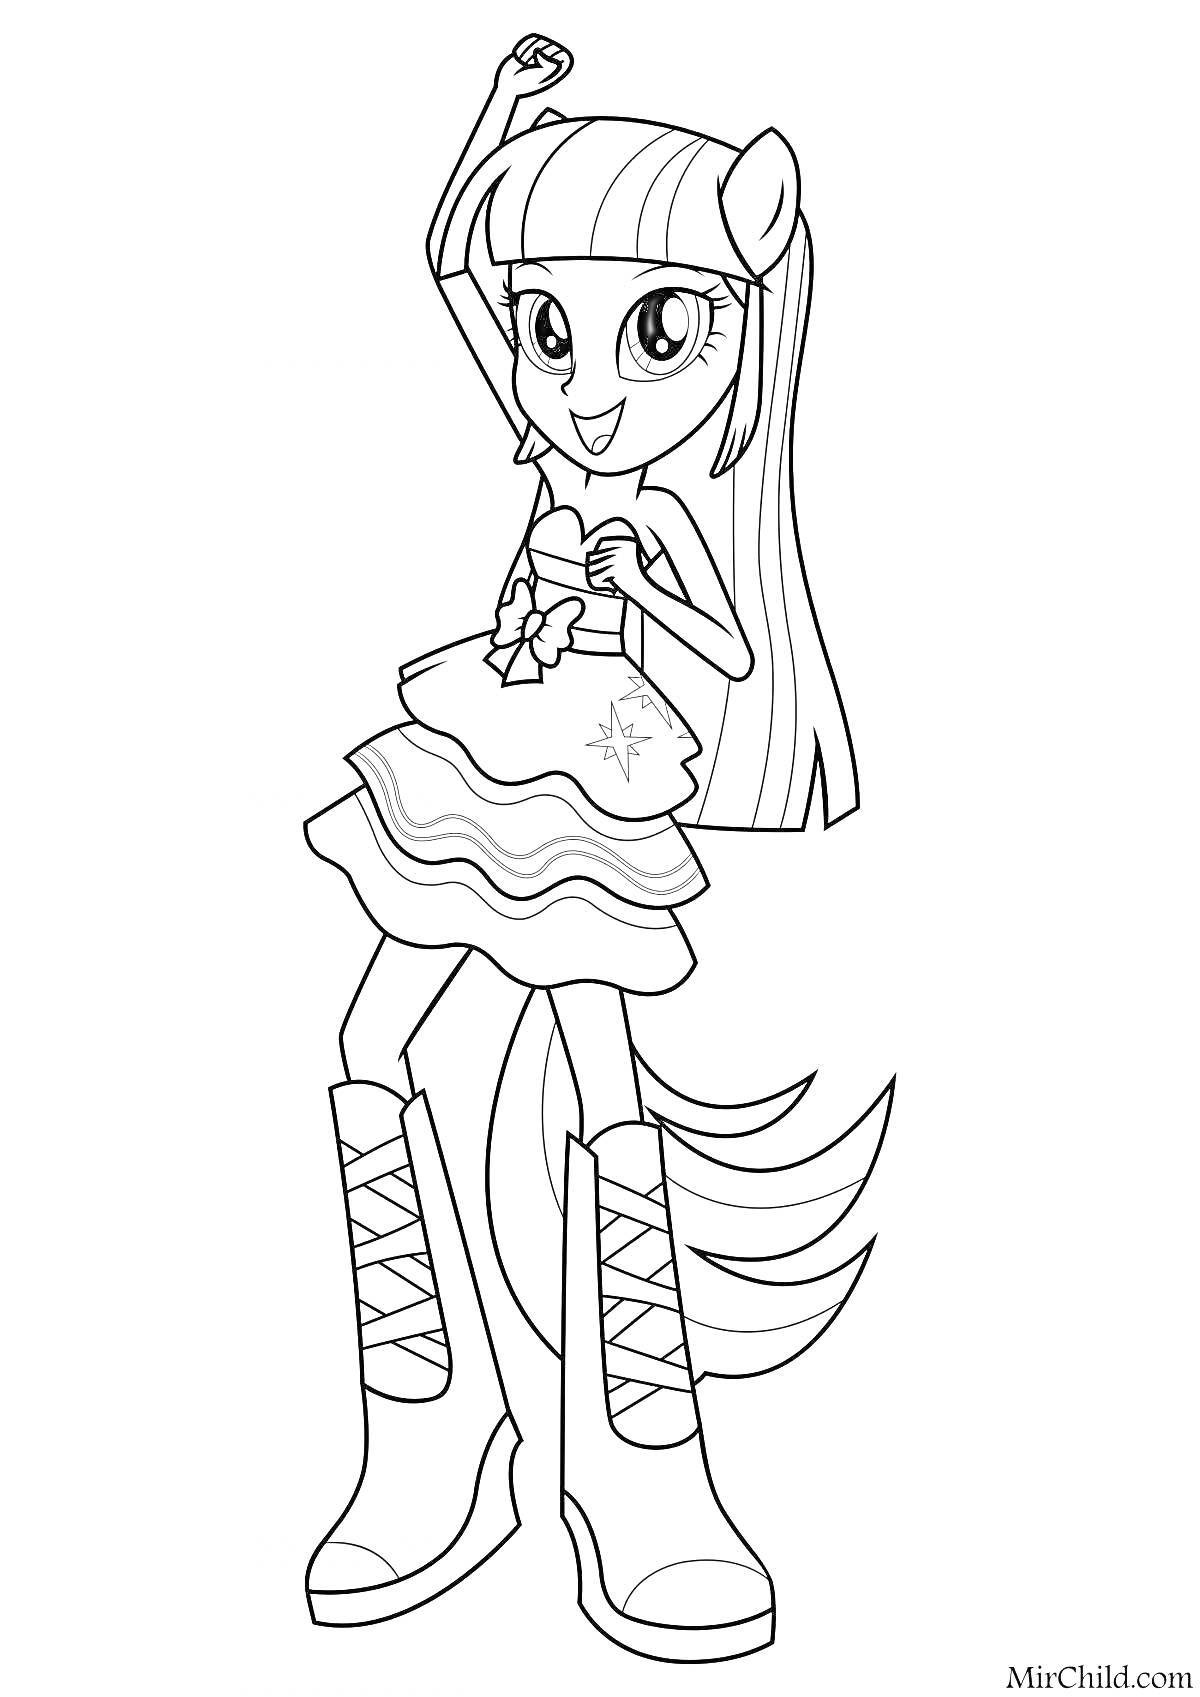 Раскраска Девочка в стилизованном платье с длинными волосами, ушами пони, хвостом и высокими сапогами